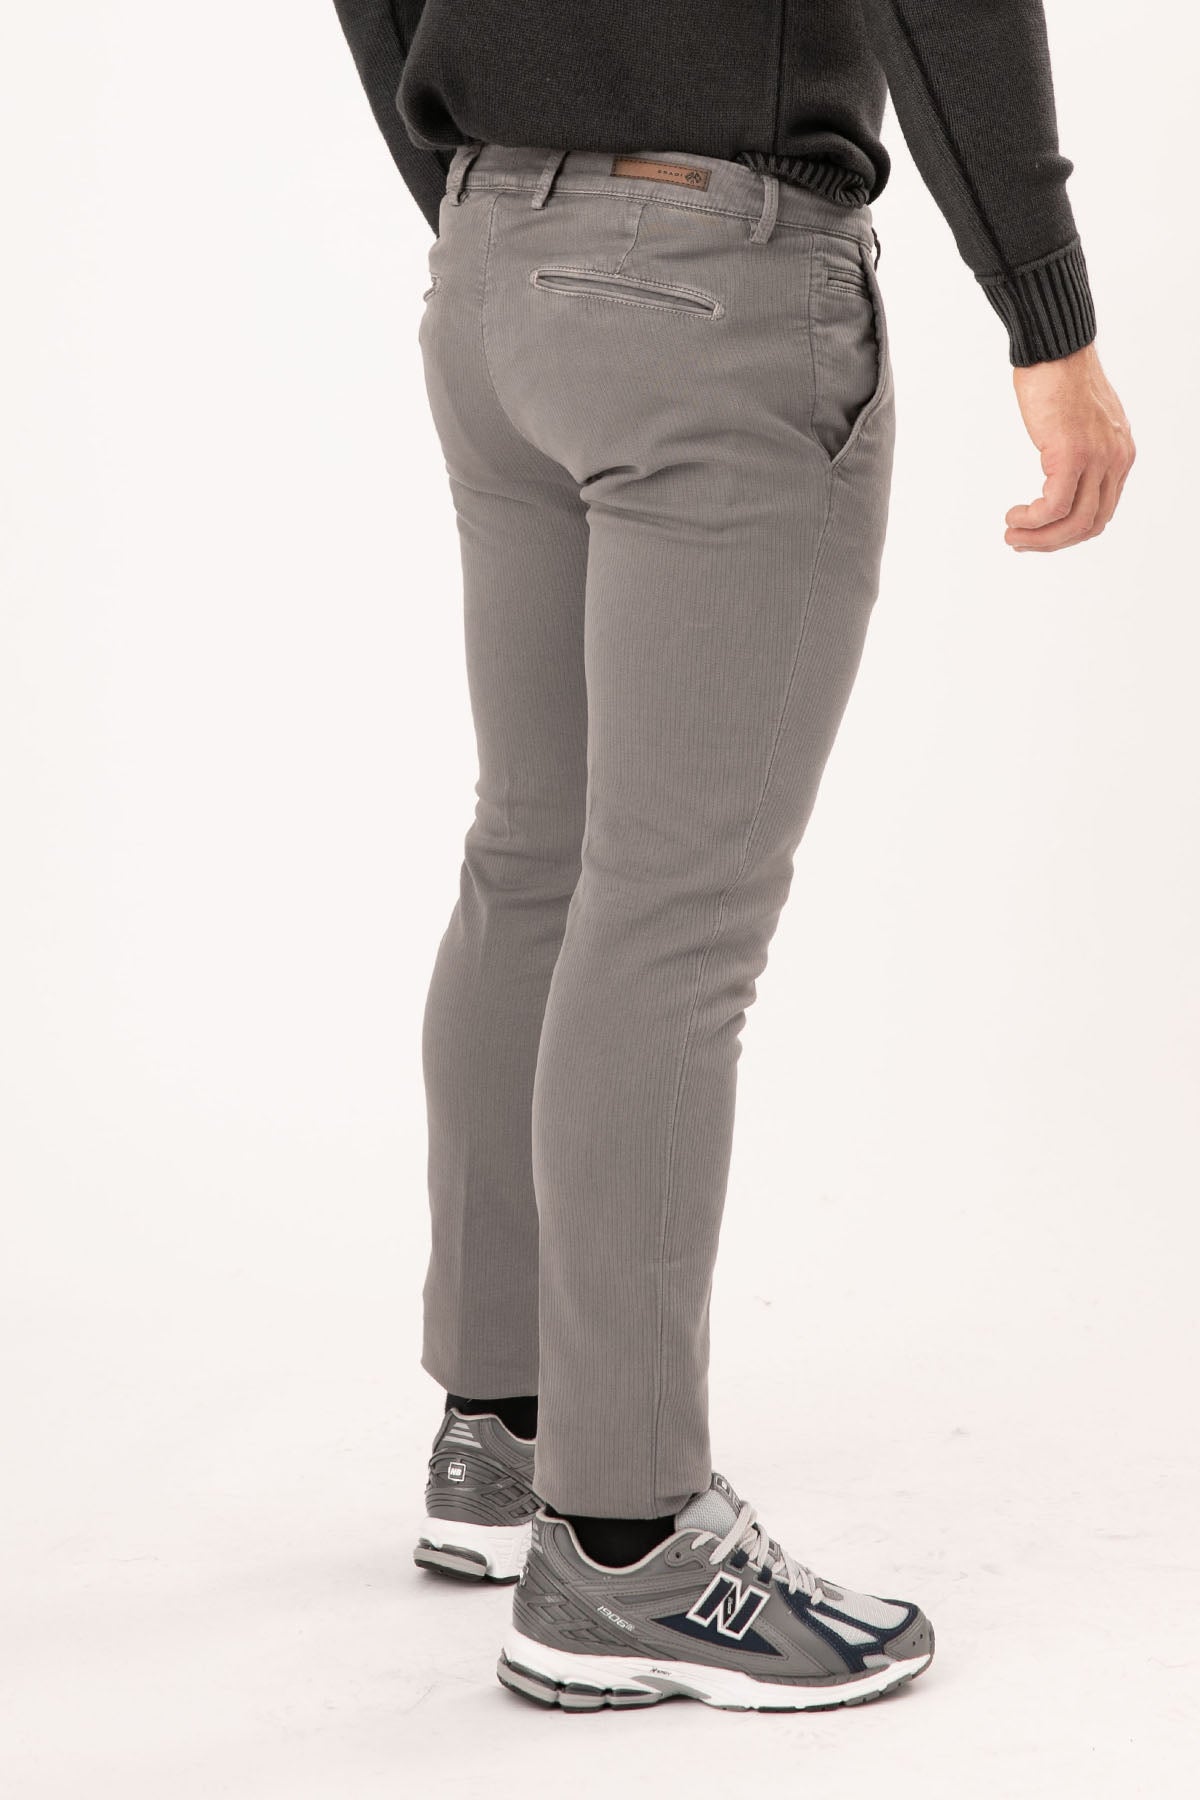 Fradi Young Fit Yandan Cepli Pantolon-Libas Trendy Fashion Store